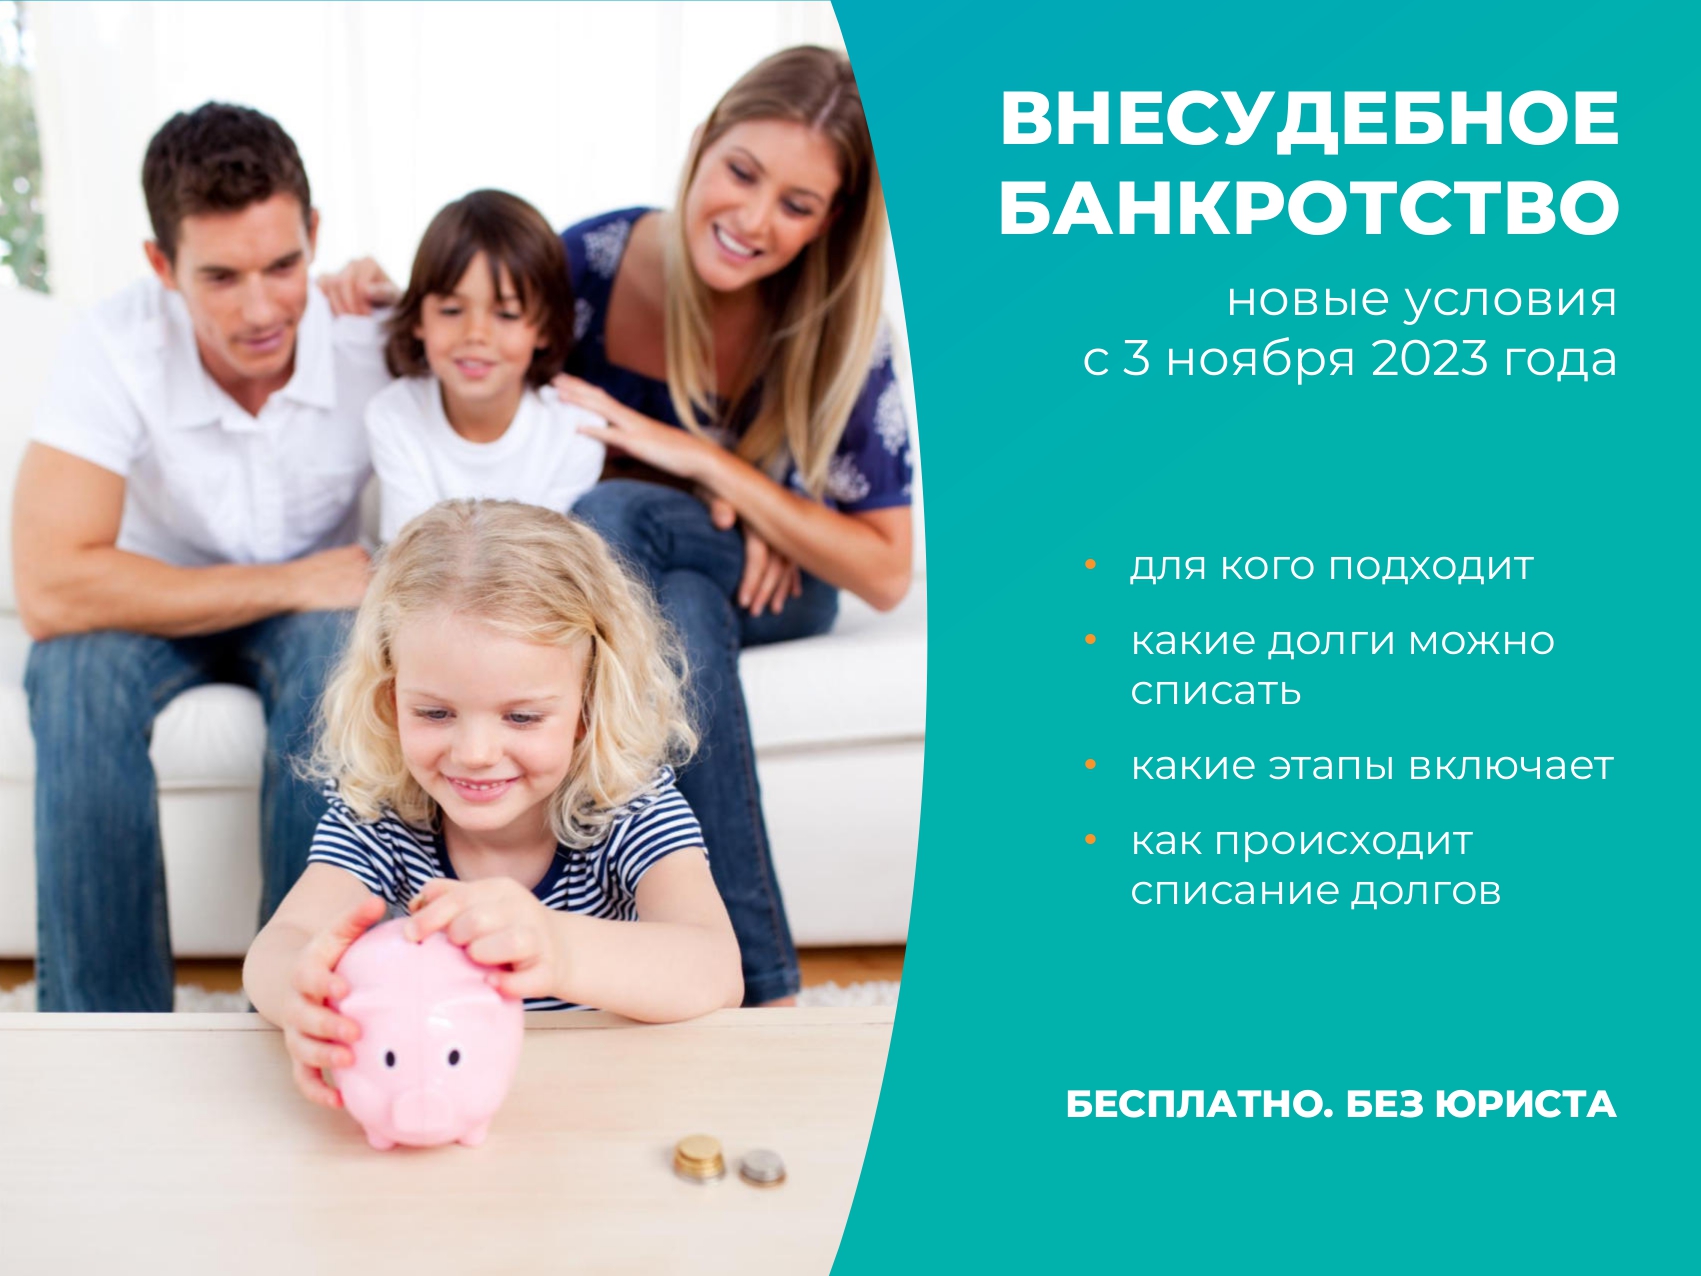 Минэкономики РФ сообщает об упрощении и повышении доступности процедур внесудебного банкротства для граждан.